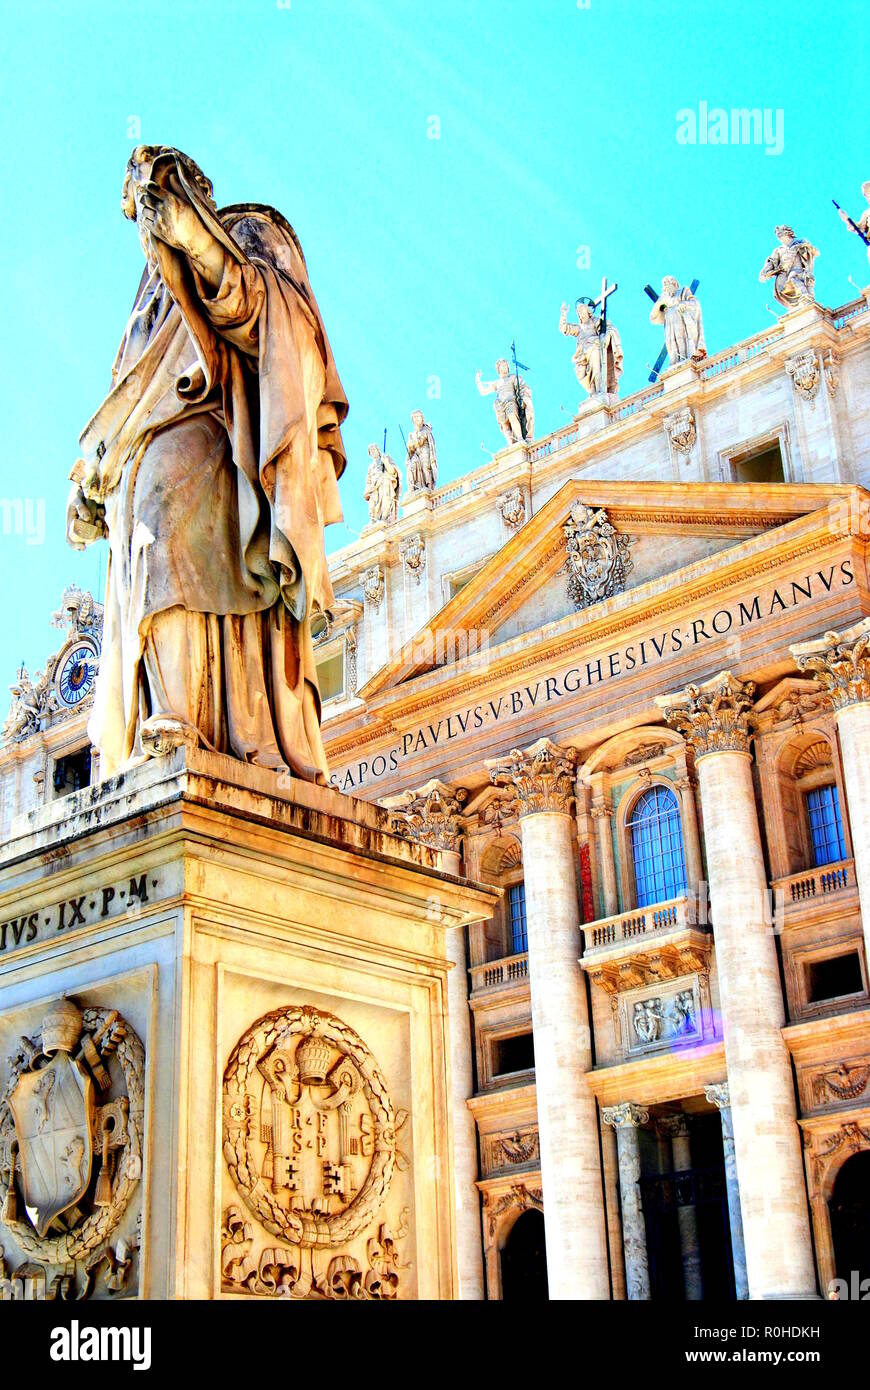 Skulpturen in der St. Peter Kathedrale, Vatikan, Rom, Italien. Engel Skulptur. Stockfoto